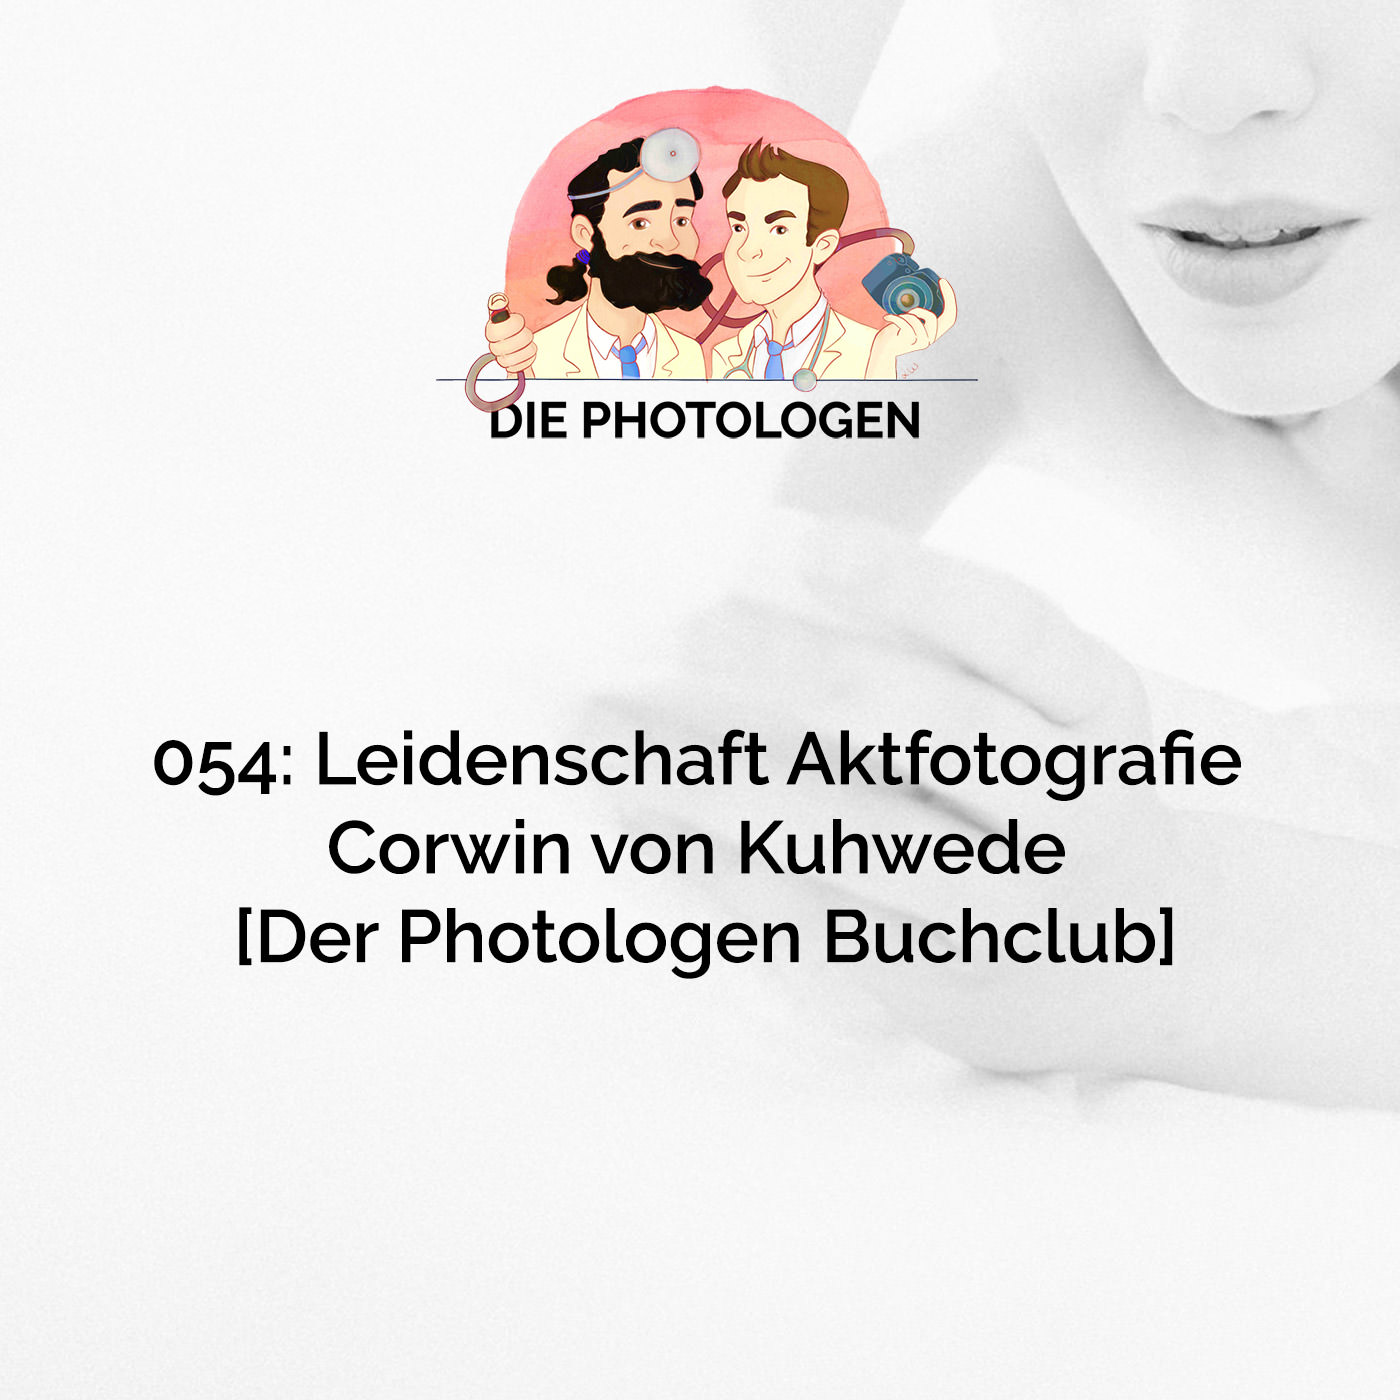 054: Leidenschaft Aktfotografie – Corwin von Kuhwede [Der Photologen Buchclub]